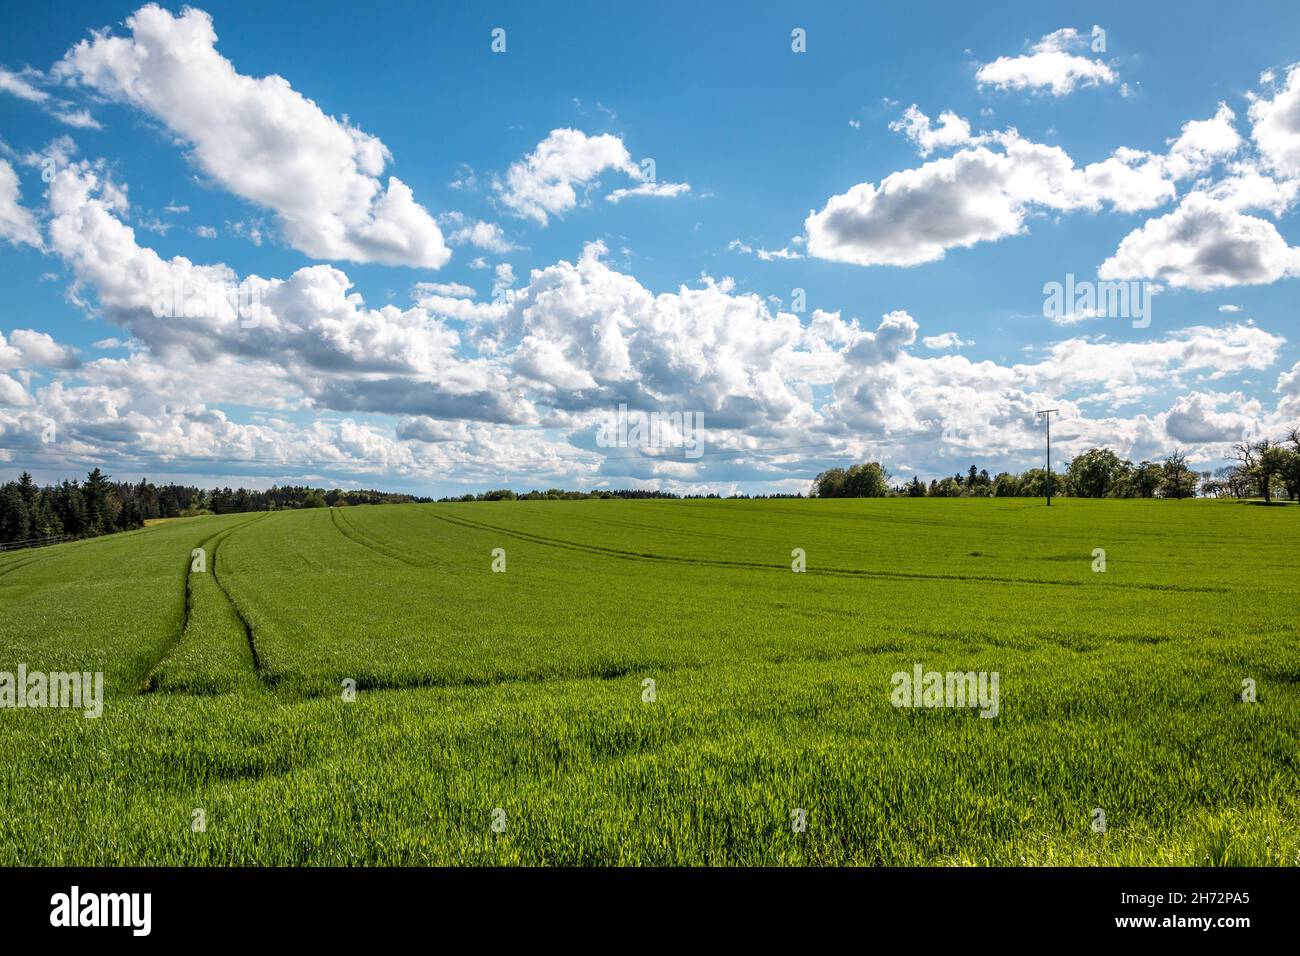 Große grüne Felder mit fruchtbarem Boden und grünem Getreide und der blaue Himmel mit weißen Wolken Stockfoto